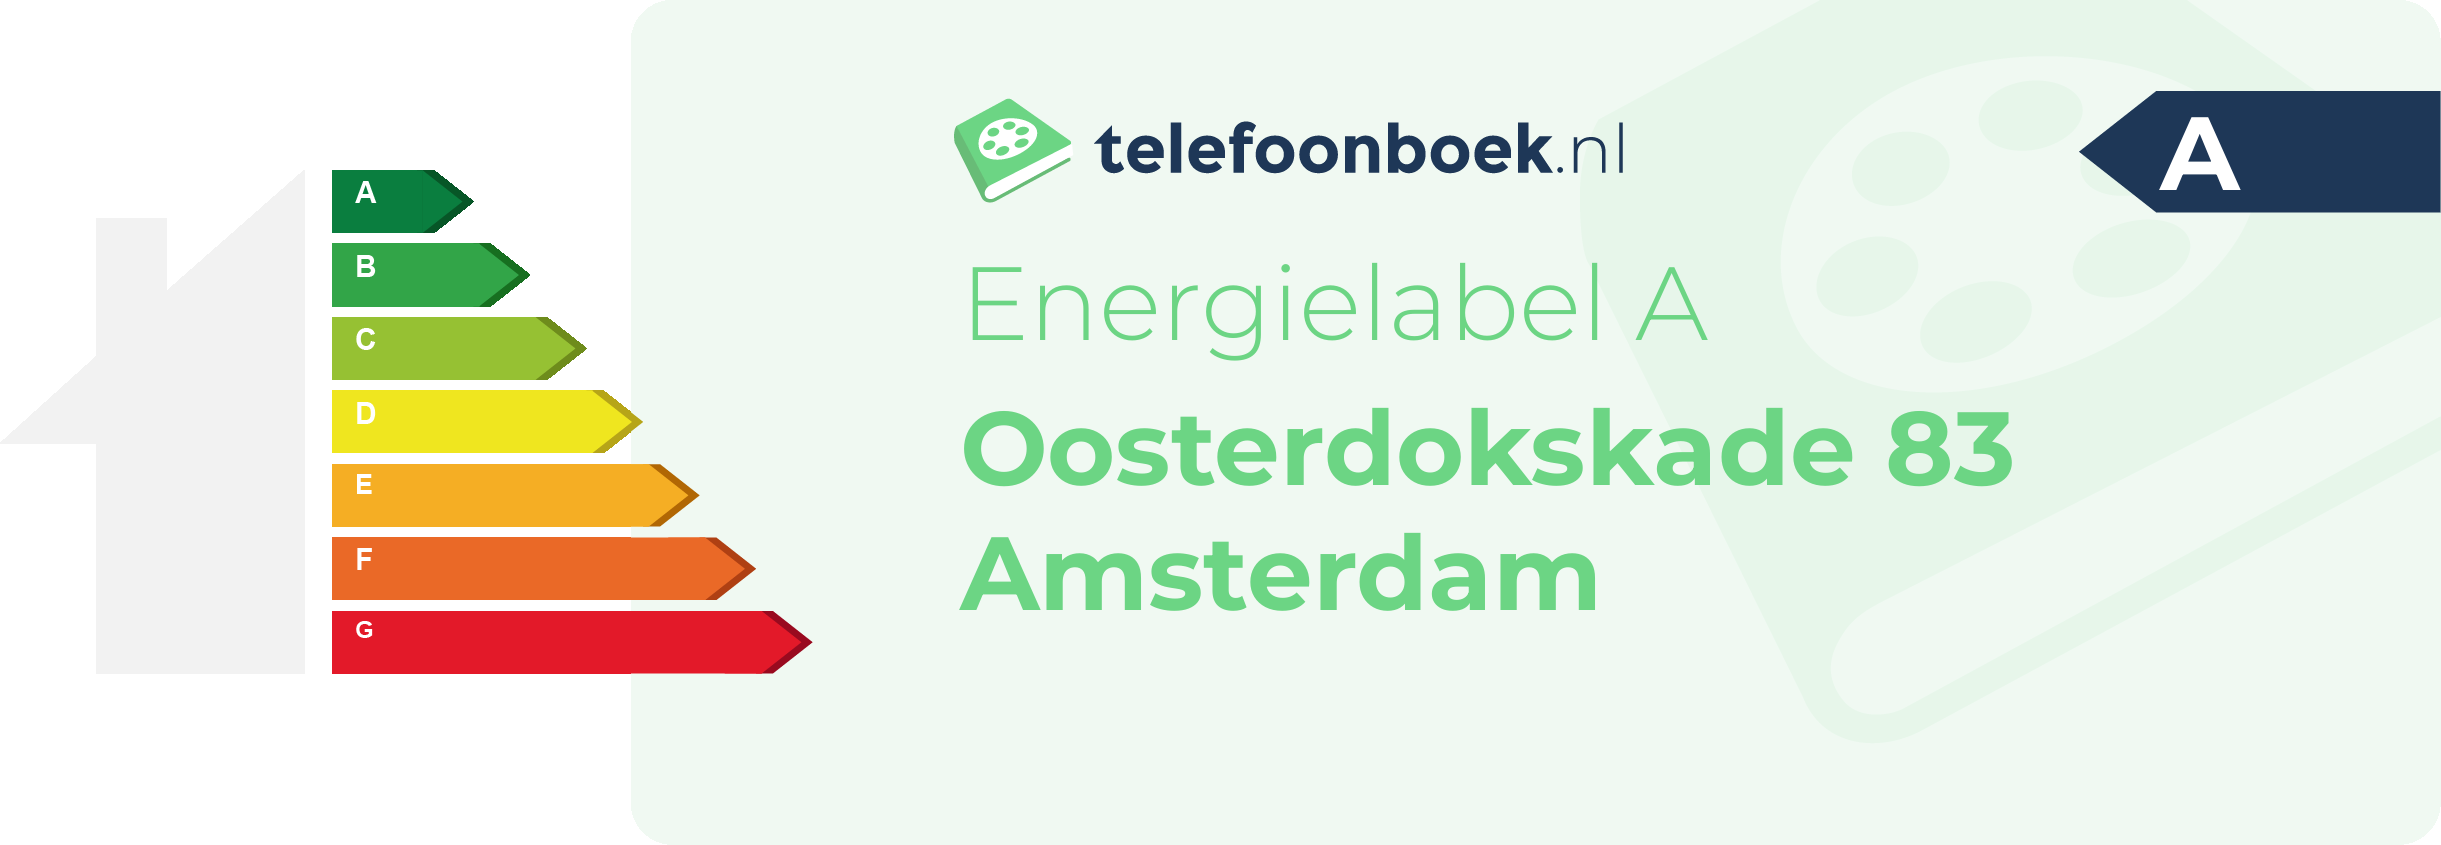 Energielabel Oosterdokskade 83 Amsterdam